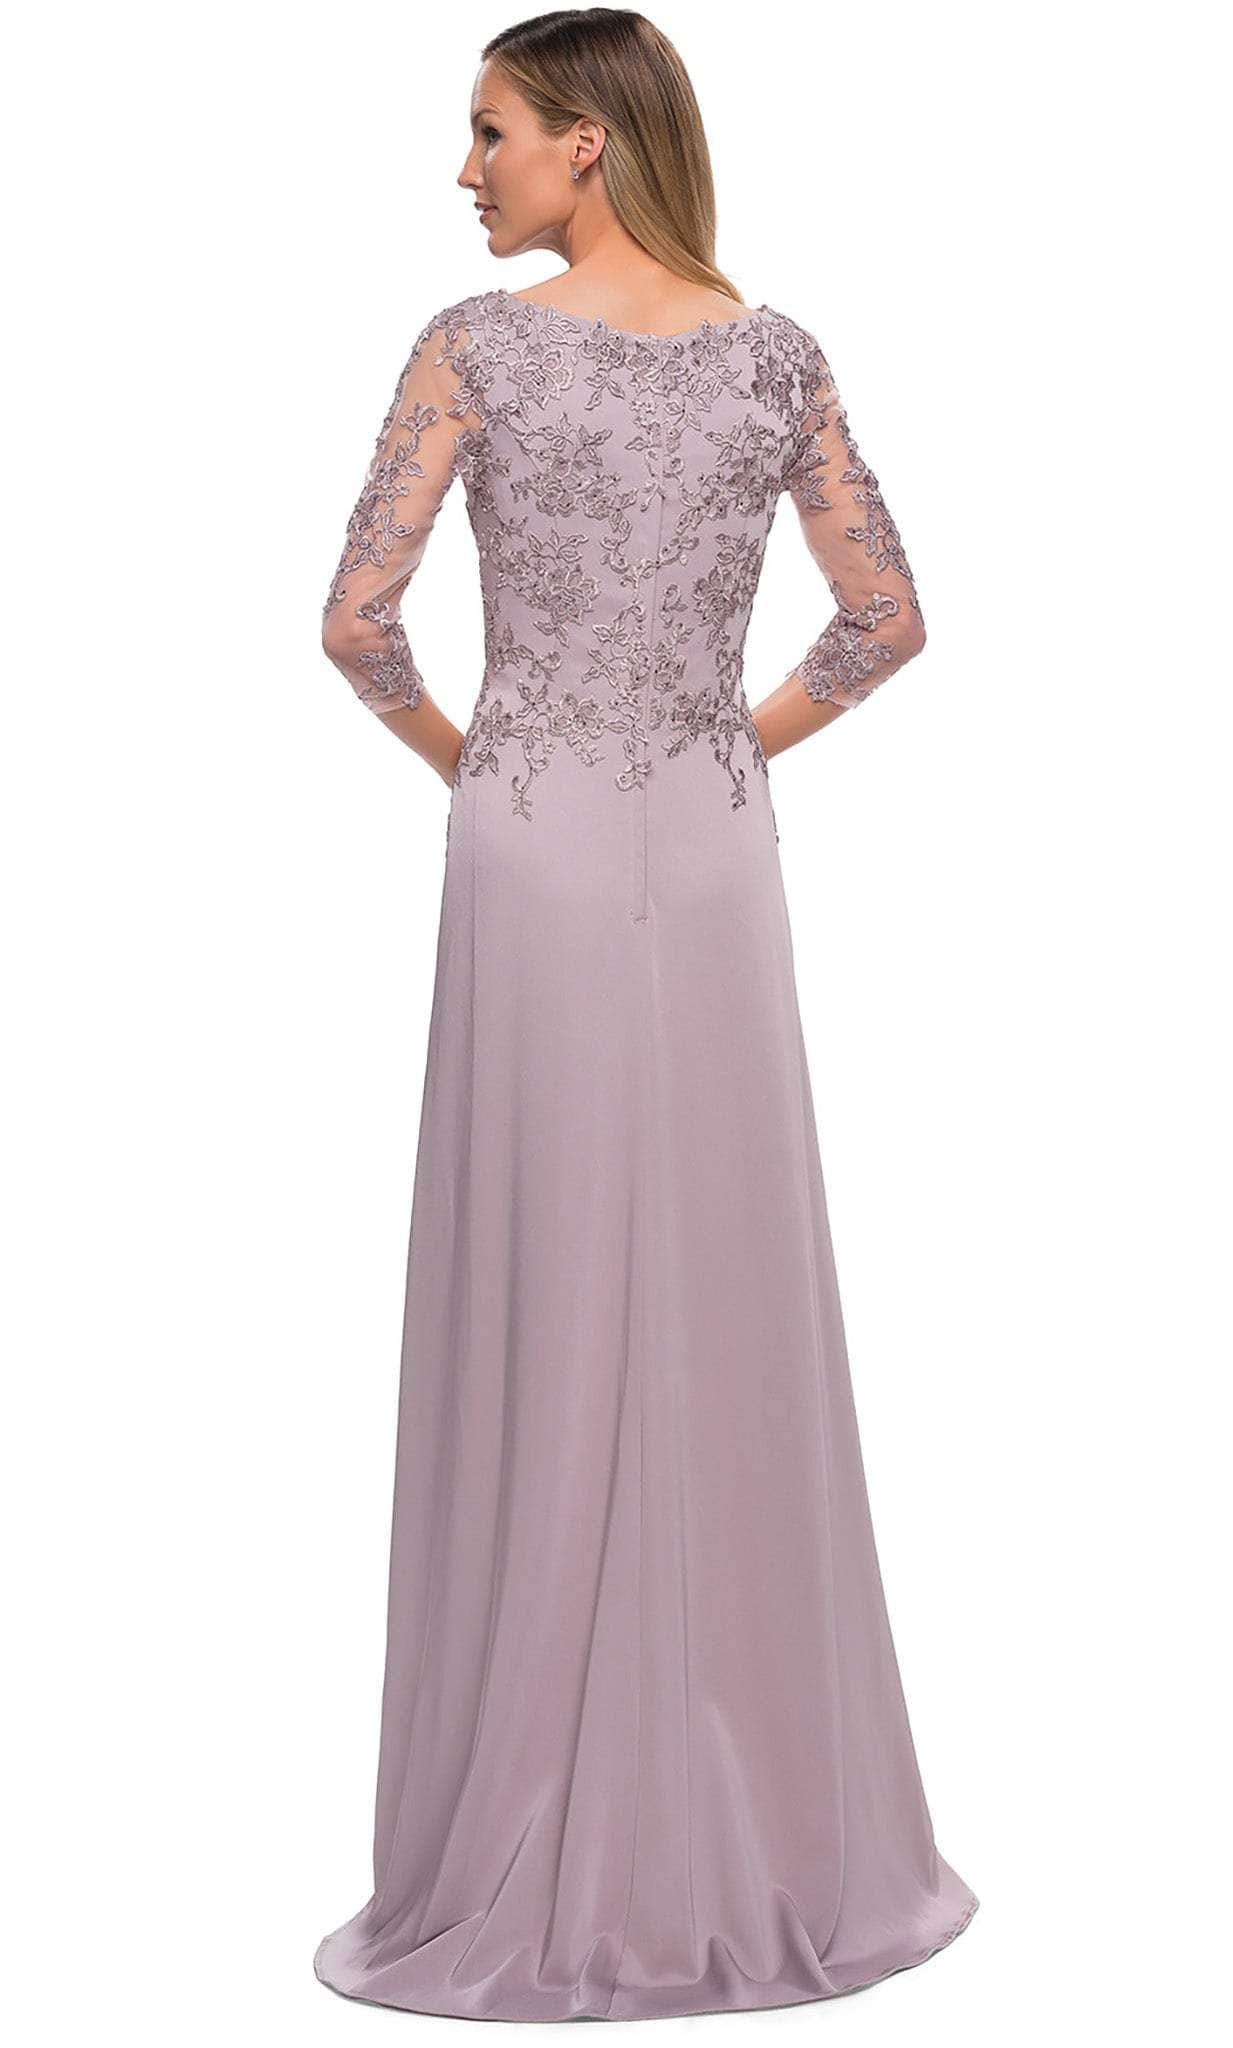 La Femme 29251SC - A-Line Lace Appliqued Formal Gown Special Occasion Dresses